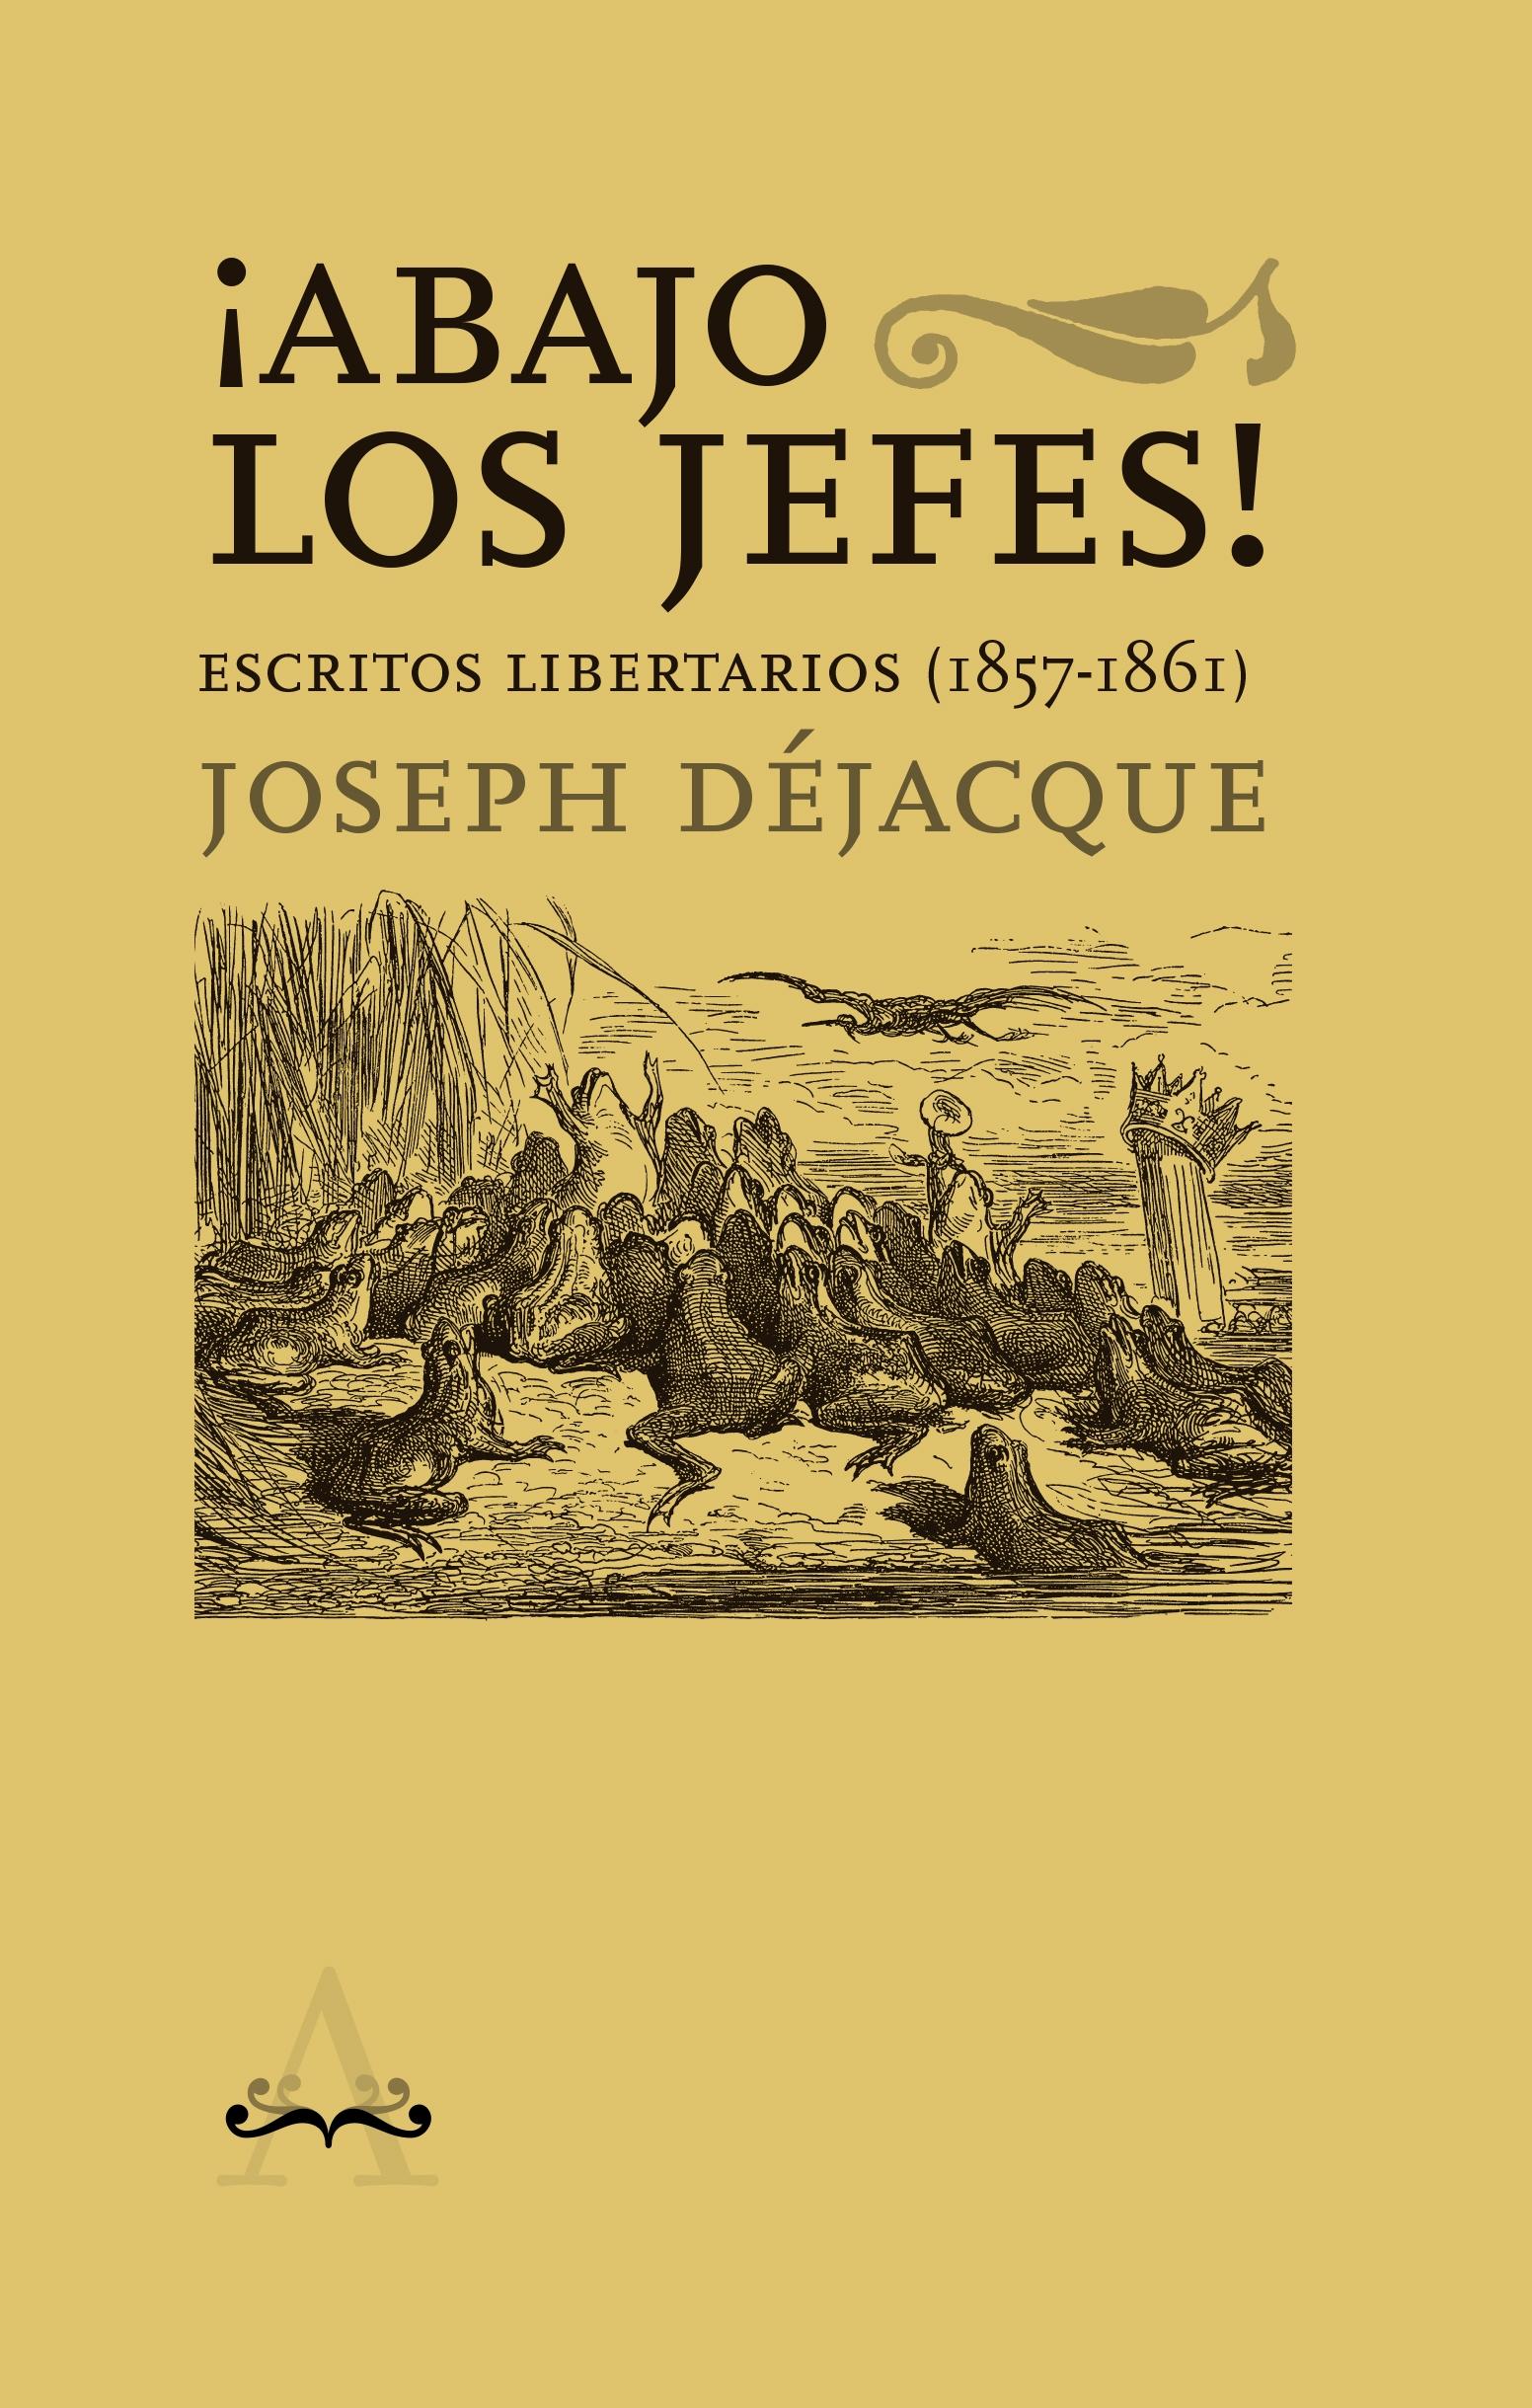 ¡ABAJO LOS JEFES! ESCRITOS LIBERTARIOS (1857-1861)